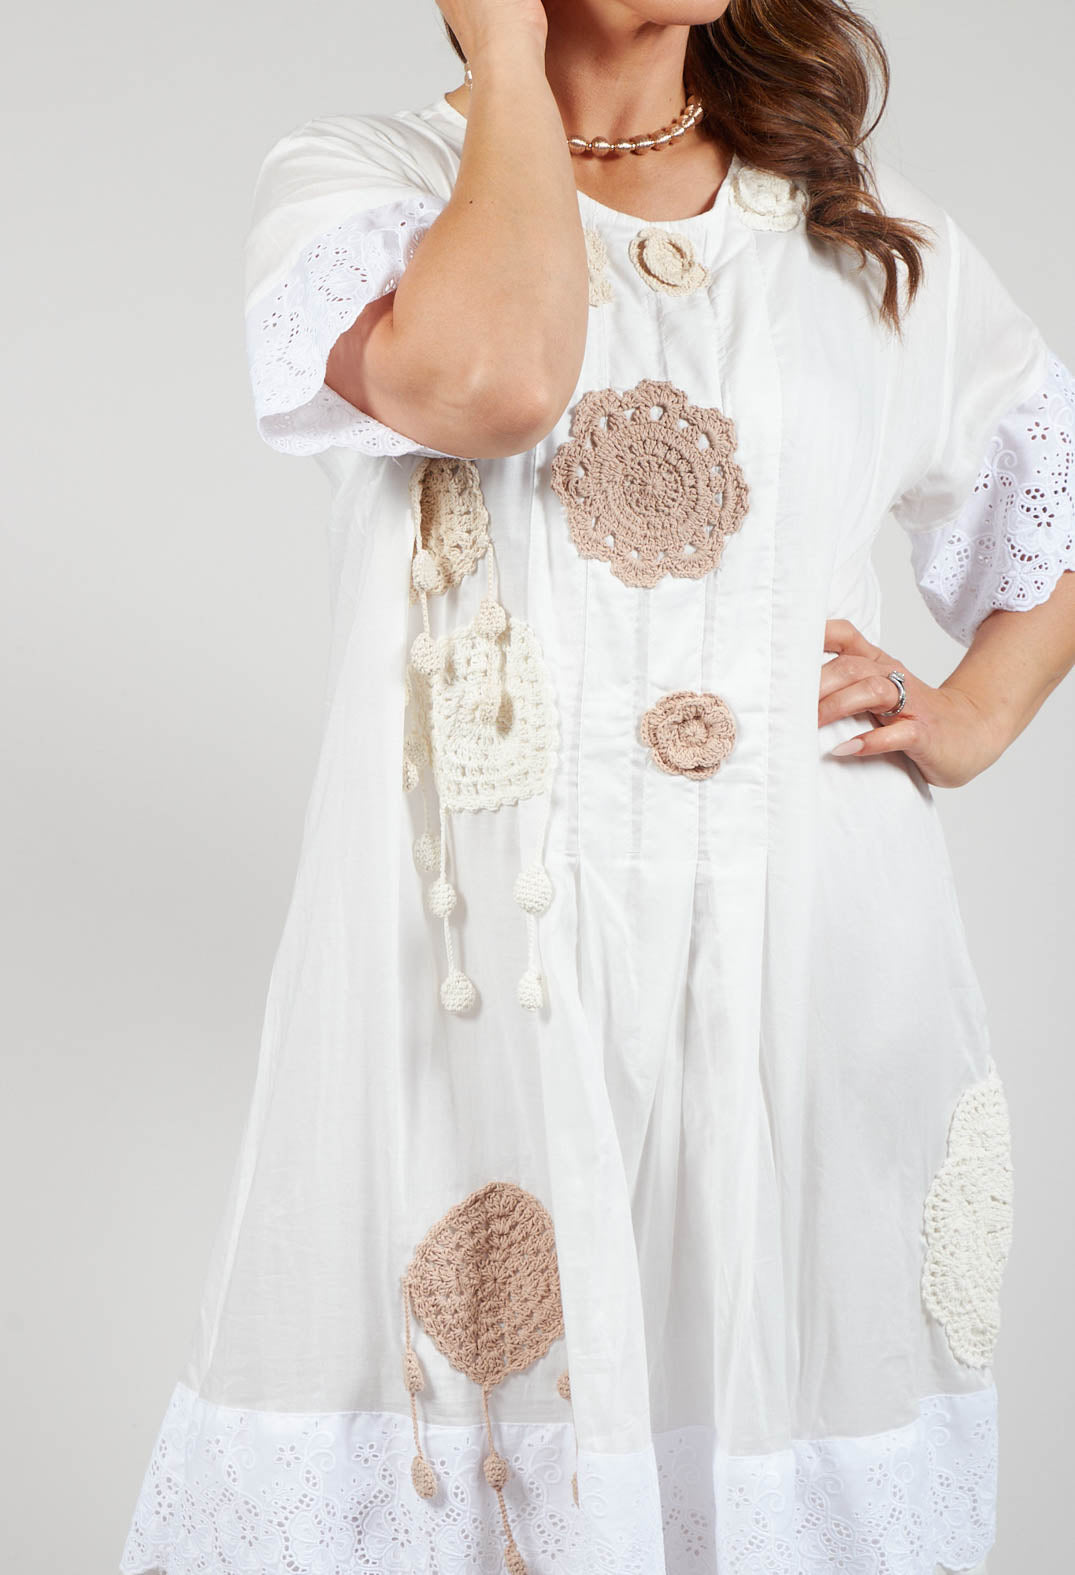 Crochet Detail Dress in White